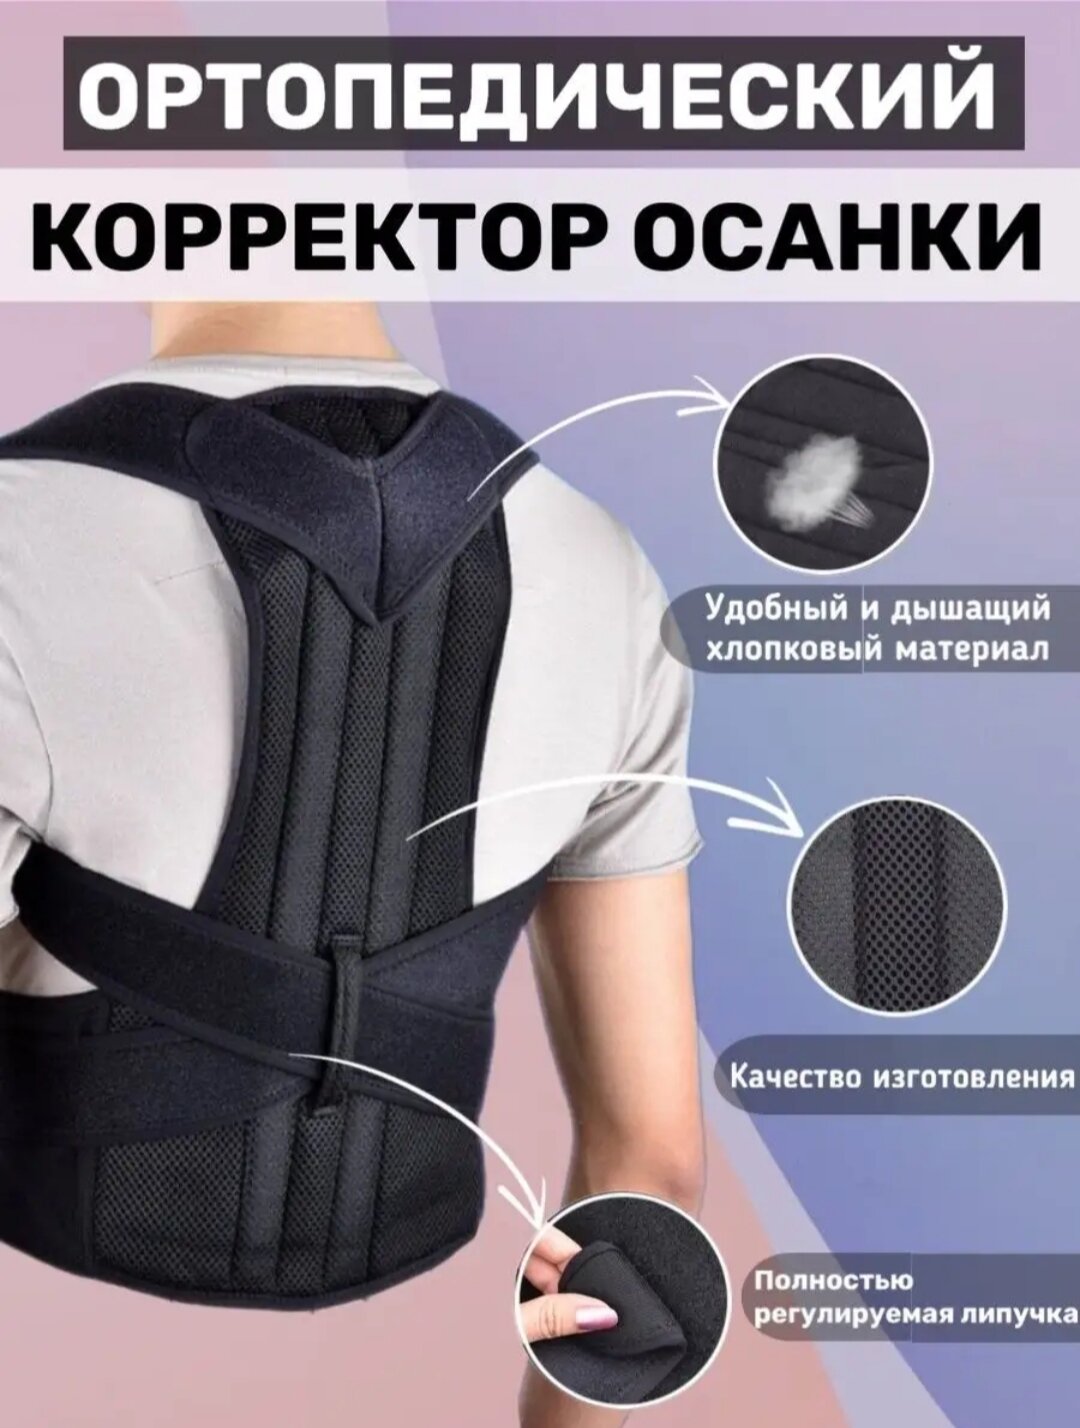 Корректор осанки -Back pain need help